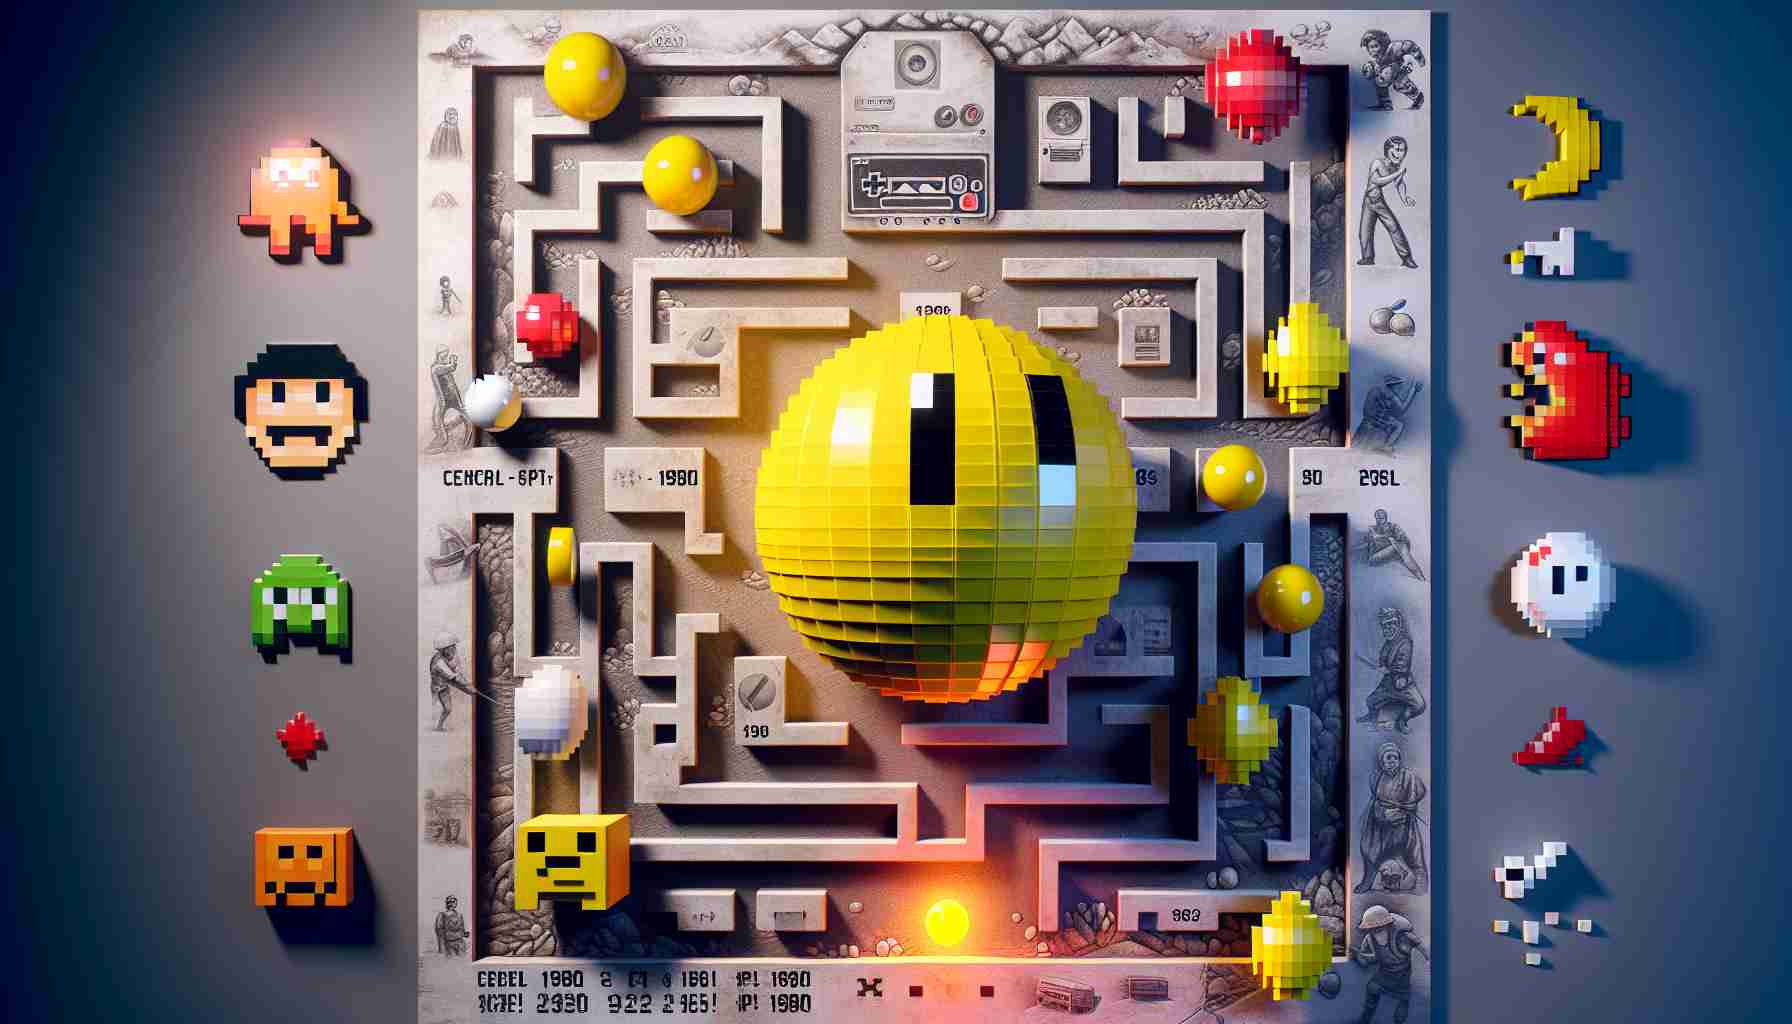 Pac-Man (Google's 30th Anniversary Version) Gameplay 